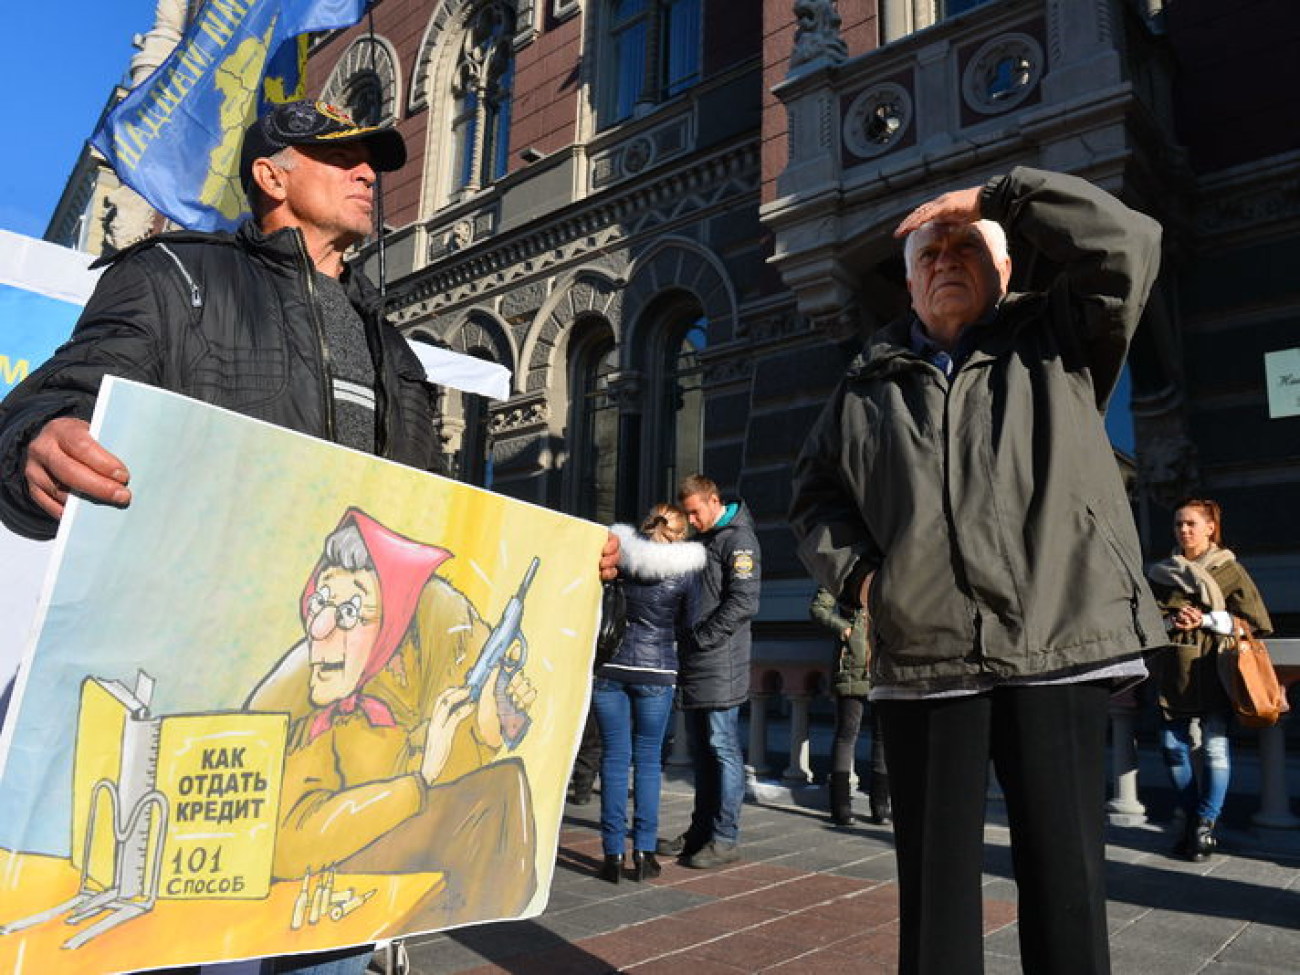 В Киеве бунтуют против шокирующего курса валют, 9 октября 2014г.